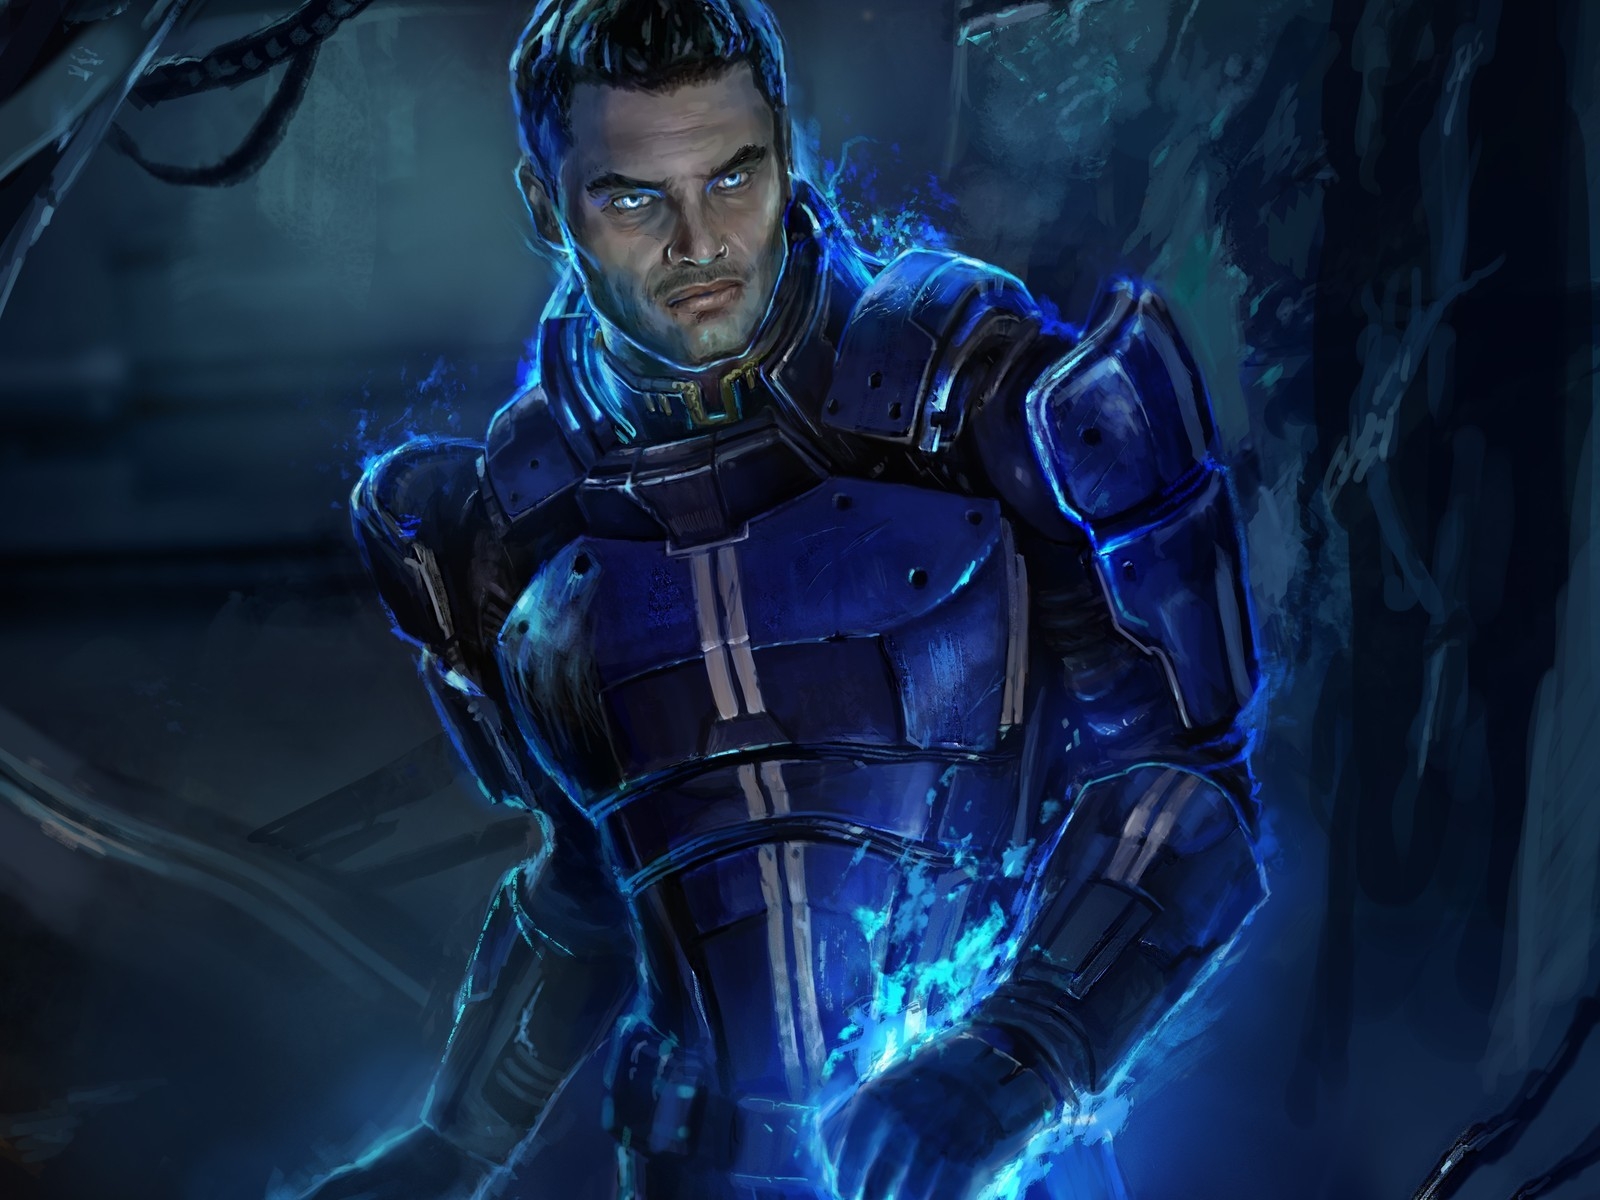 Kaidan Alenko Mass Effect 3 for 1600 x 1200 resolution